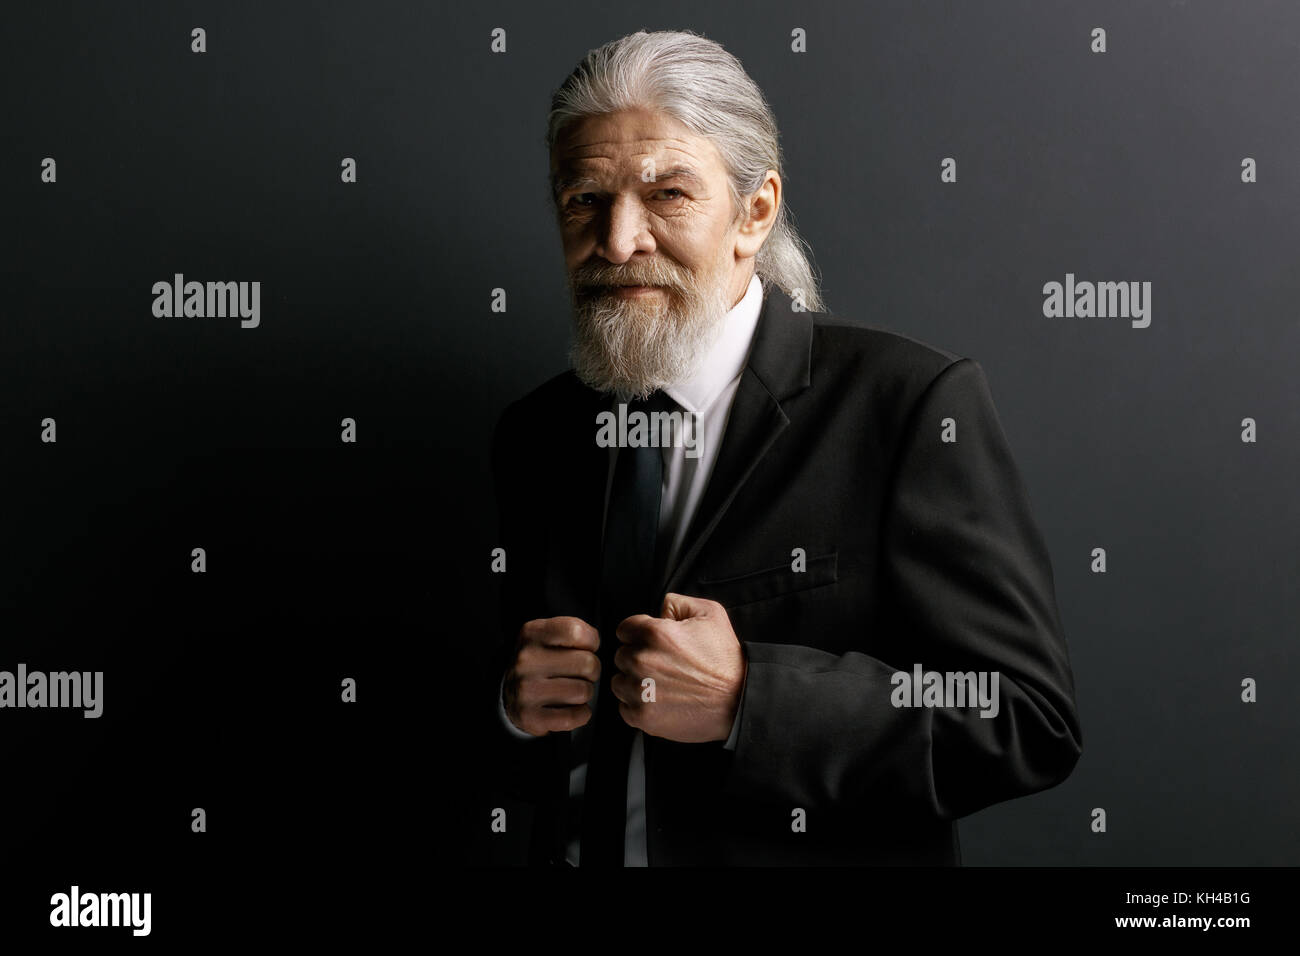 Stylish old man in black jacket. Stock Photo